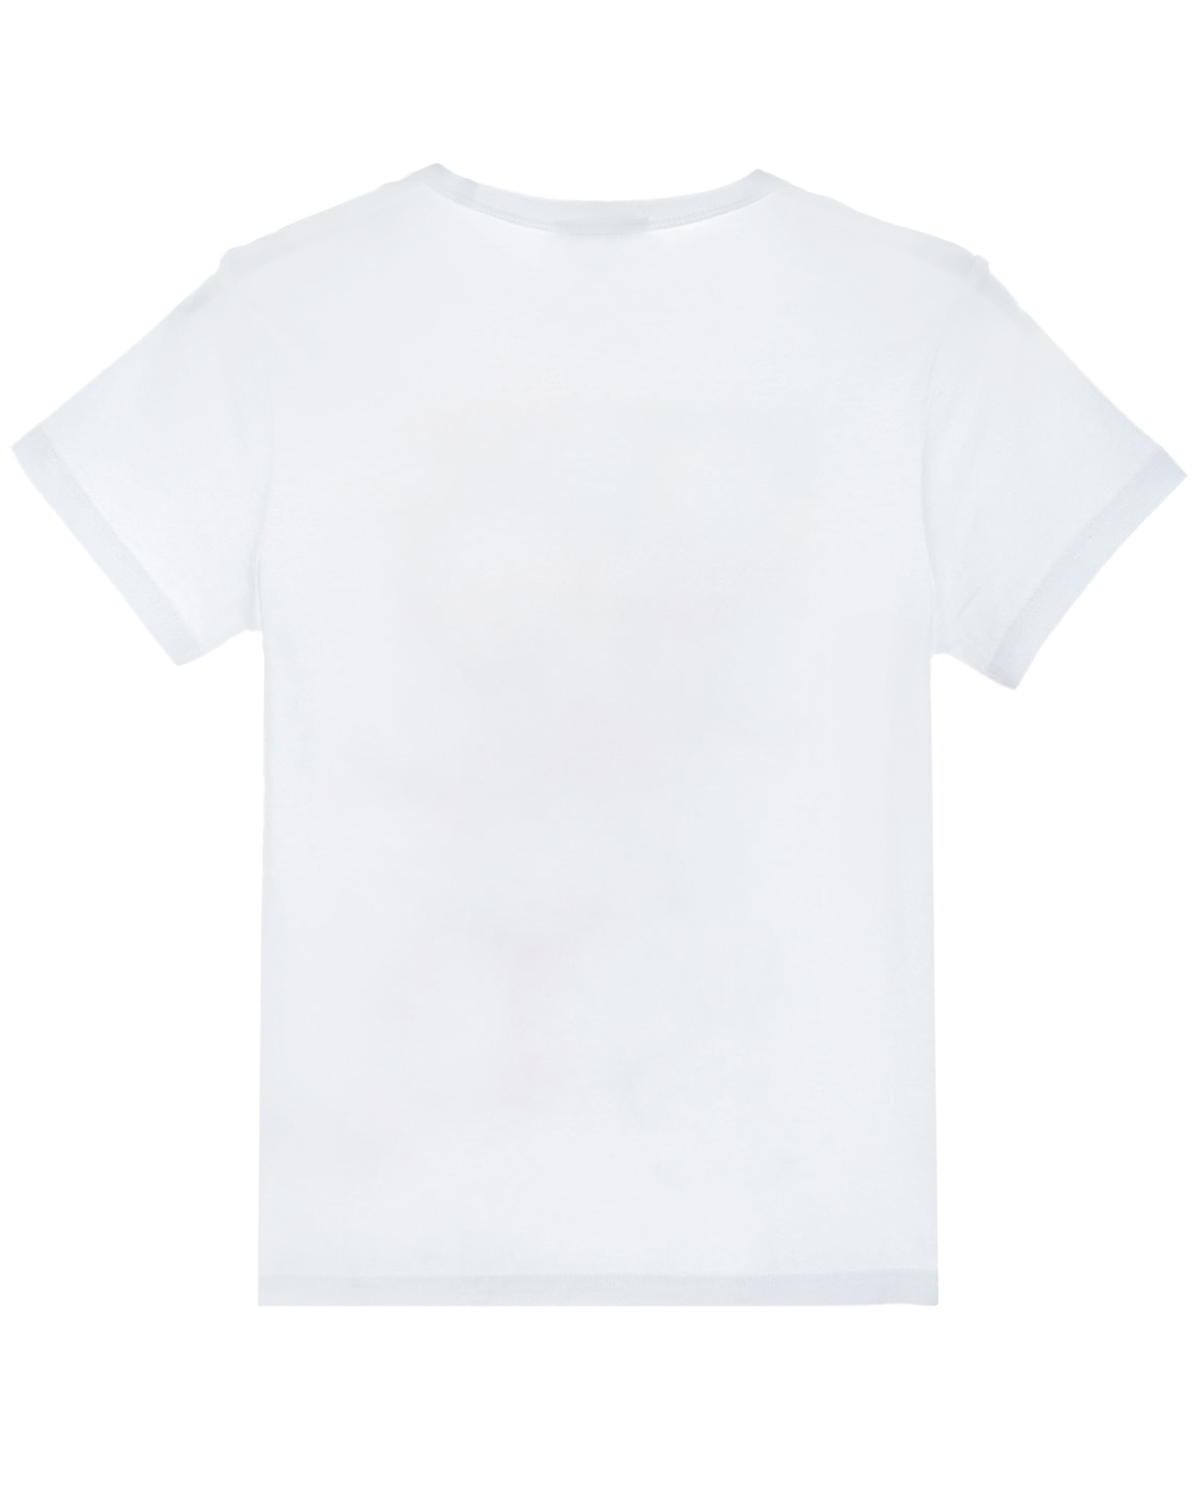 Белая футболка с принтом "комиксы" Marc Jacobs (The) детская, размер 104, цвет белый Белая футболка с принтом "комиксы" Marc Jacobs (The) детская - фото 2